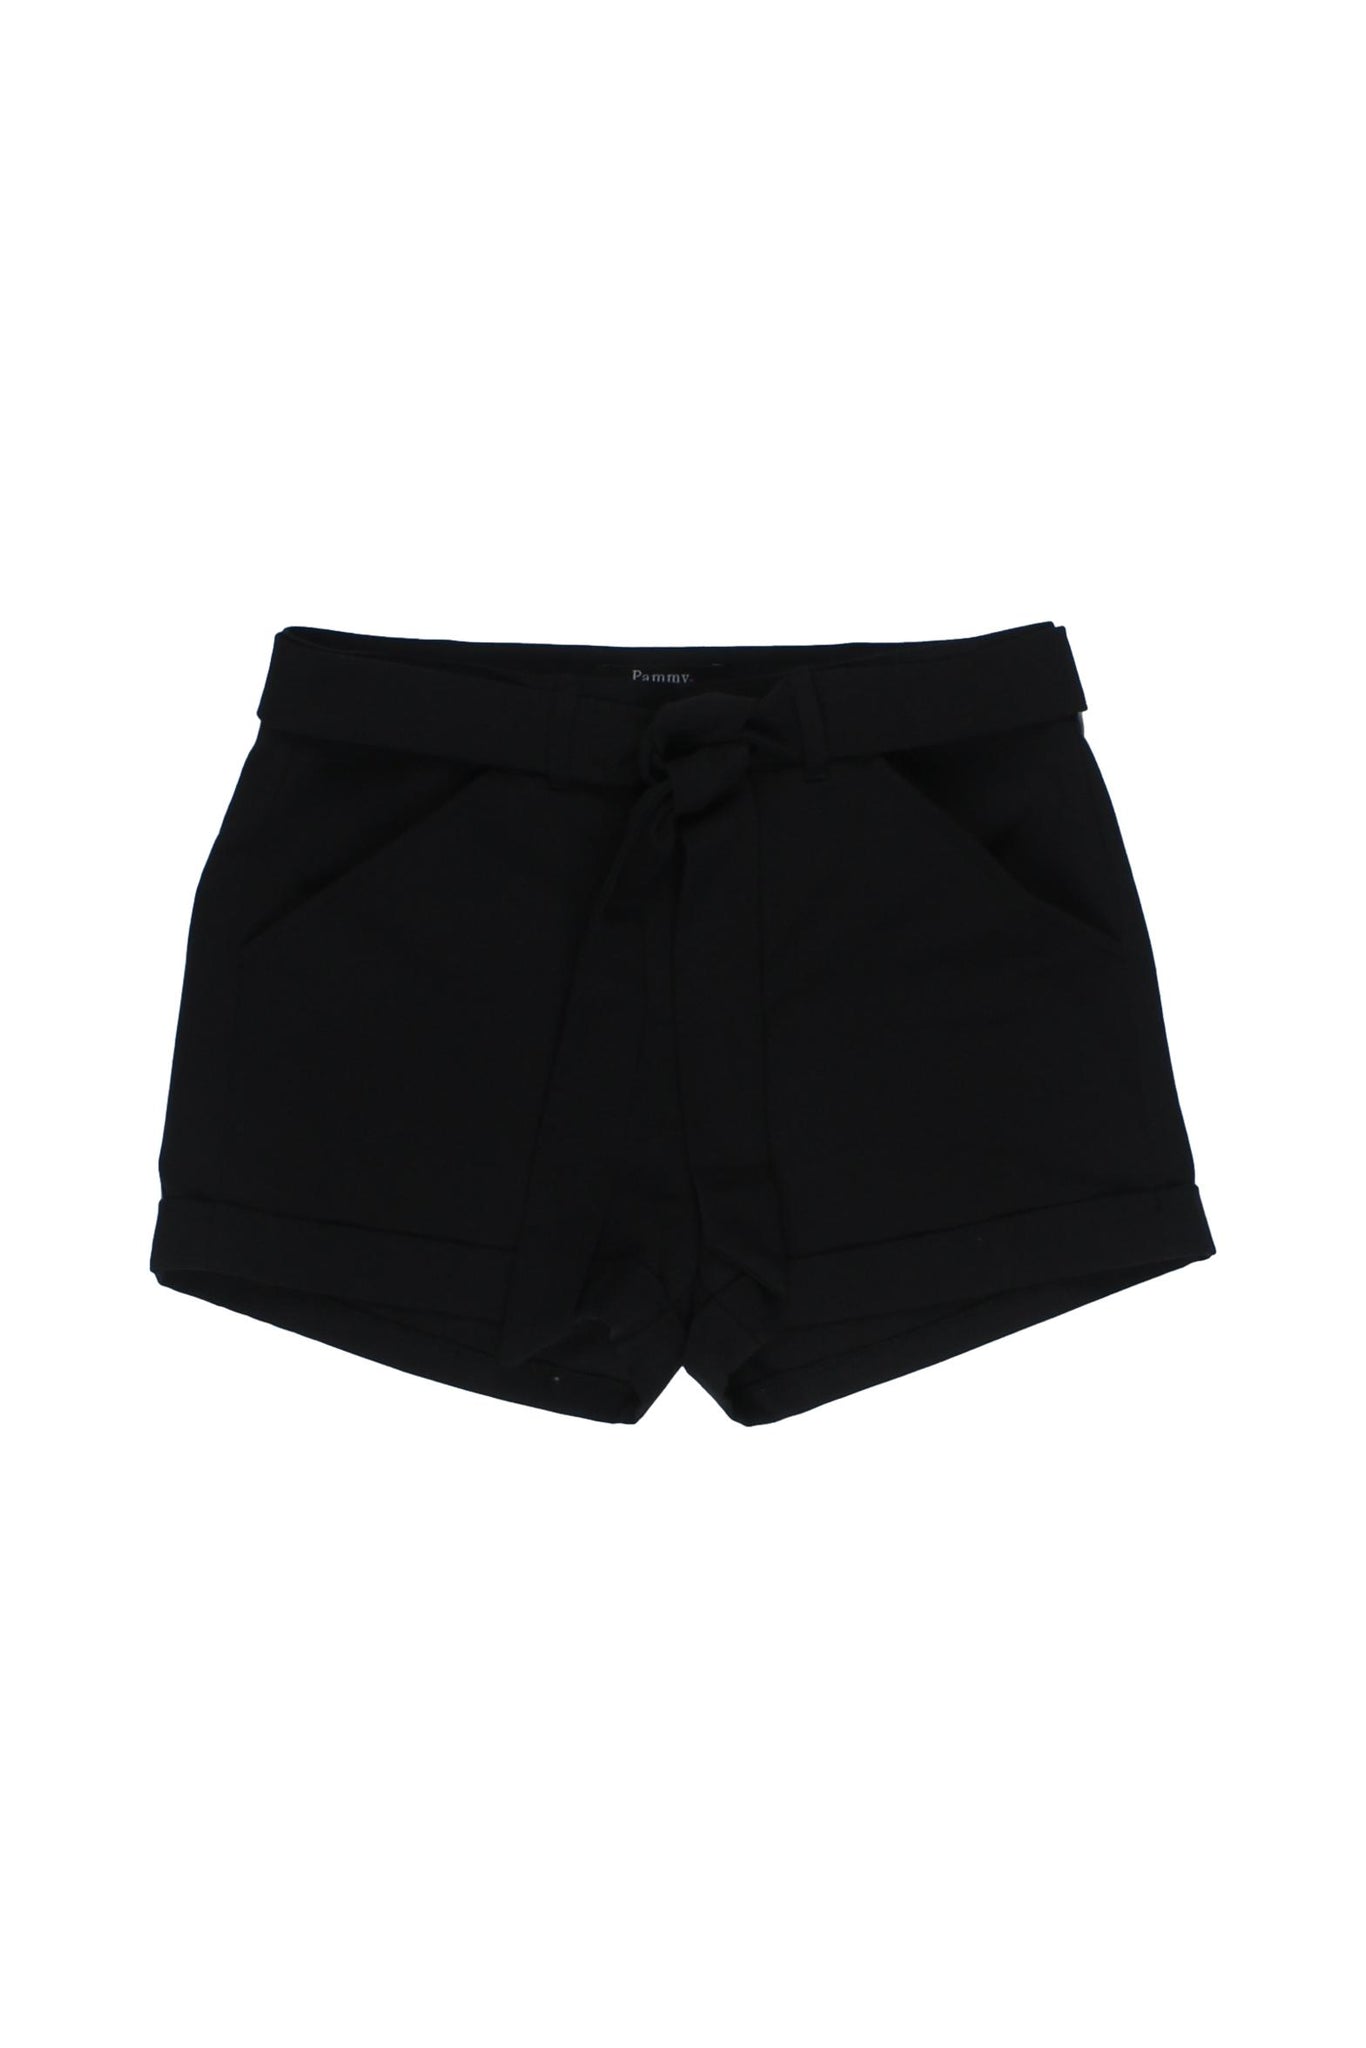 PAMMY - Shorts Color Negro Con Detalle De Liston Como Cinturon